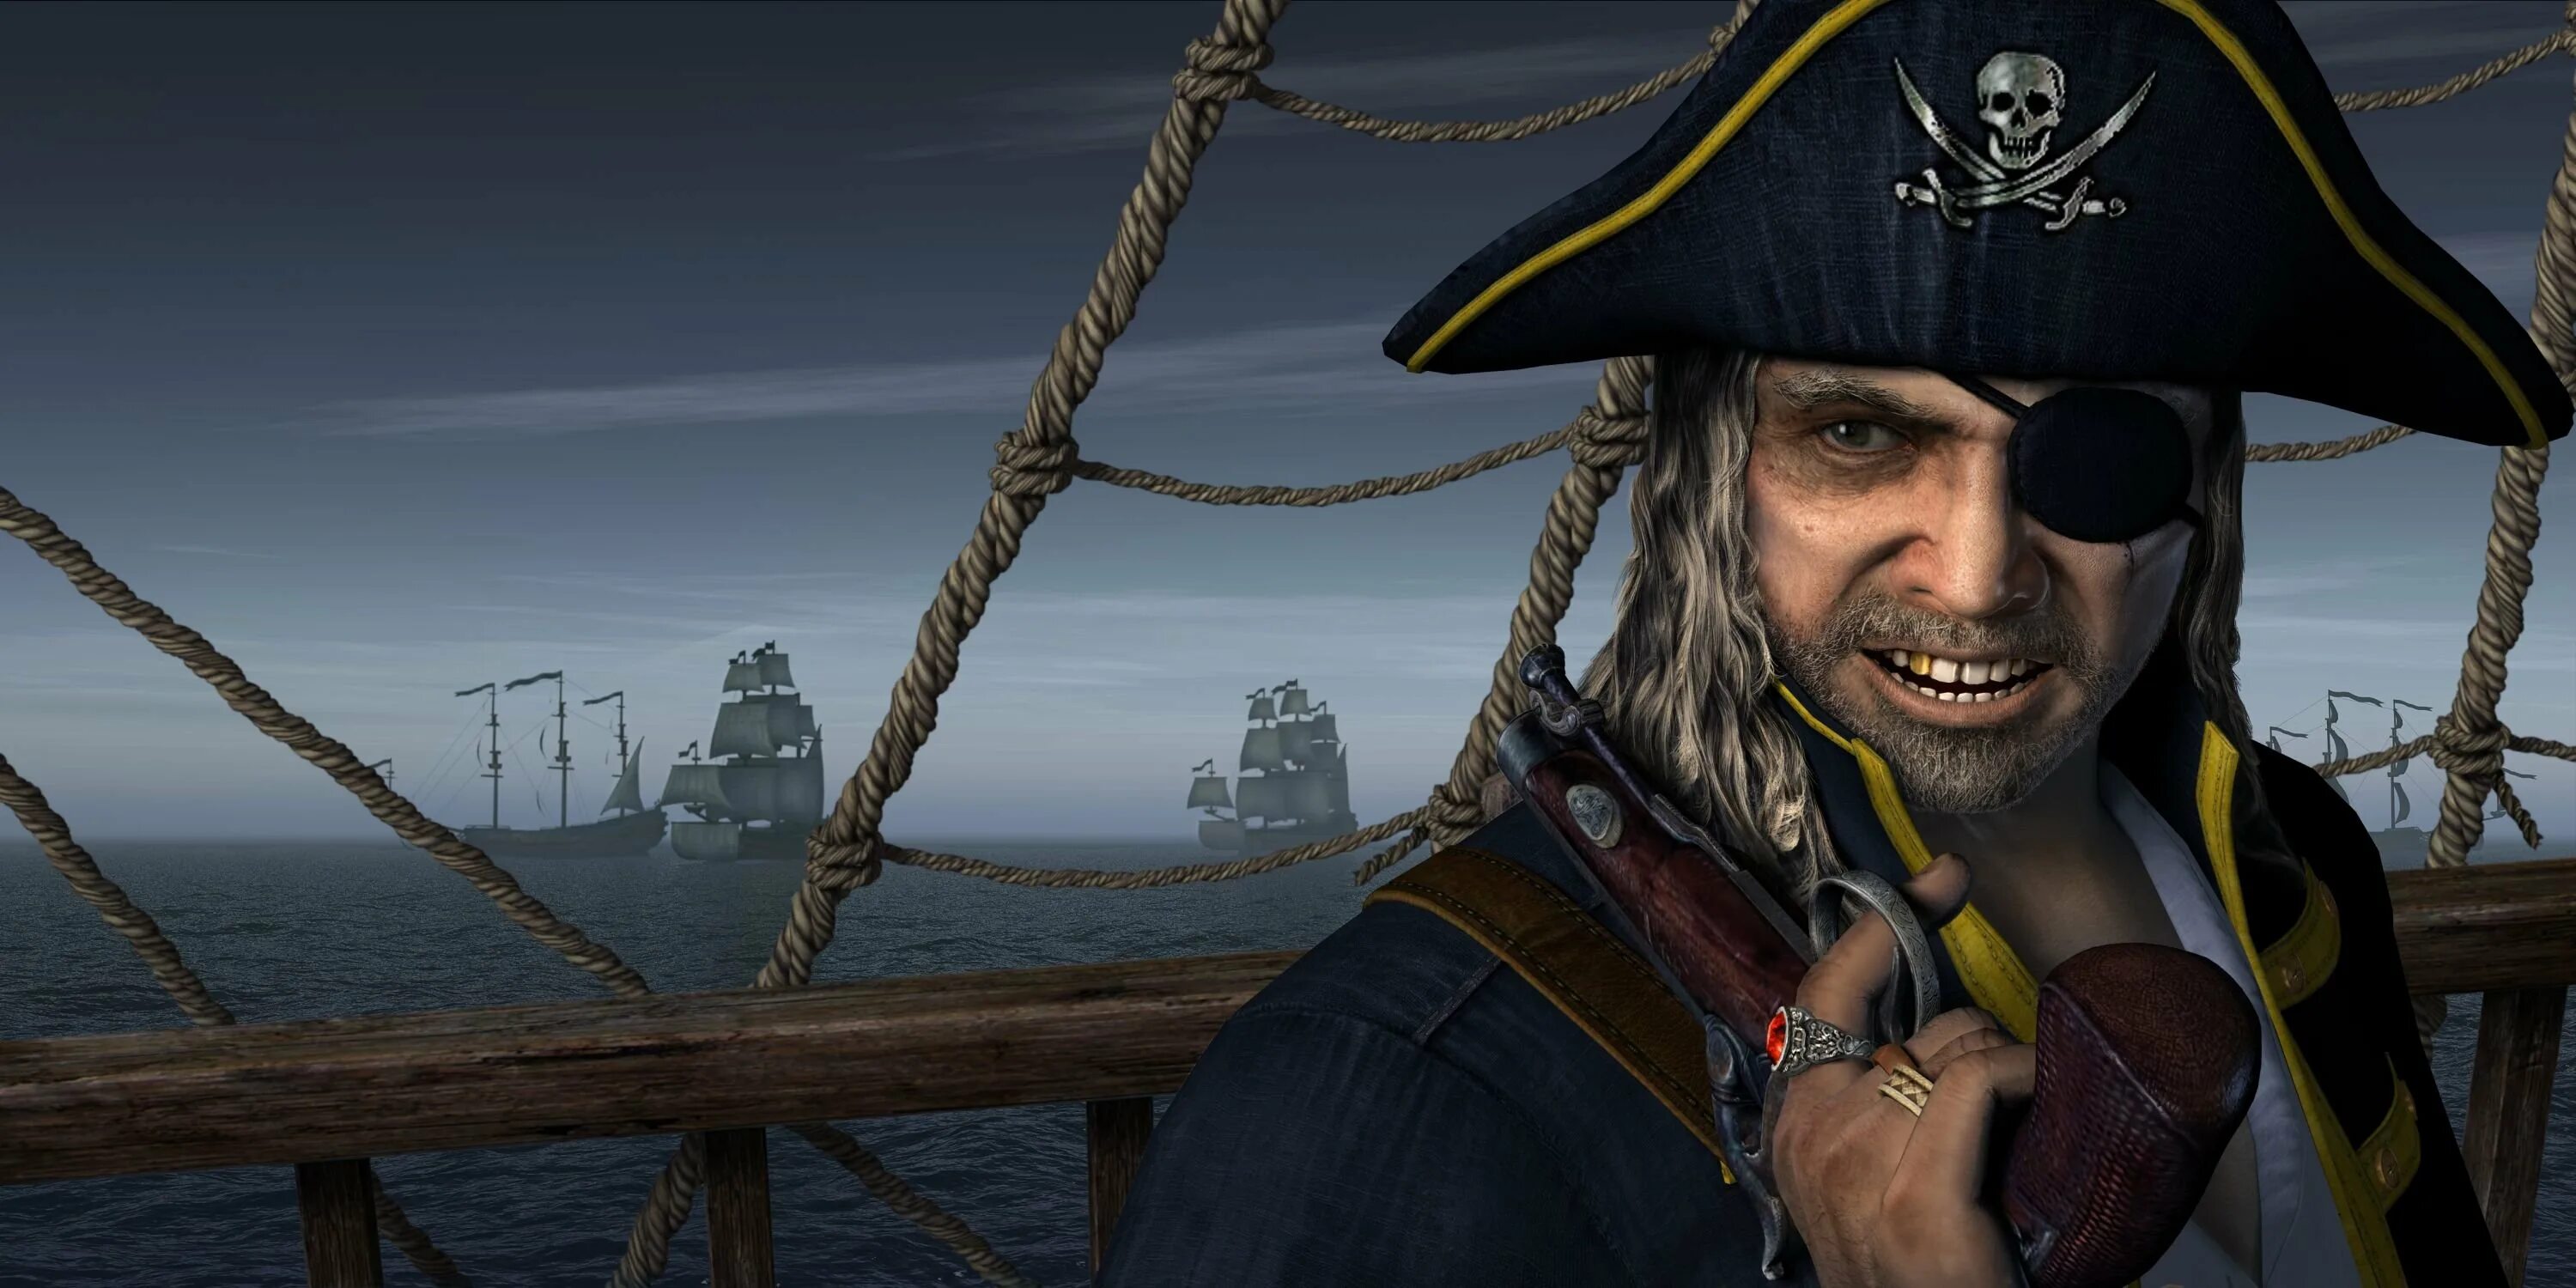 Даниэль Монбар пират. Флибустьеры пираты Корсары. Джек Воробей одноглазый пират. Включи пираты кари